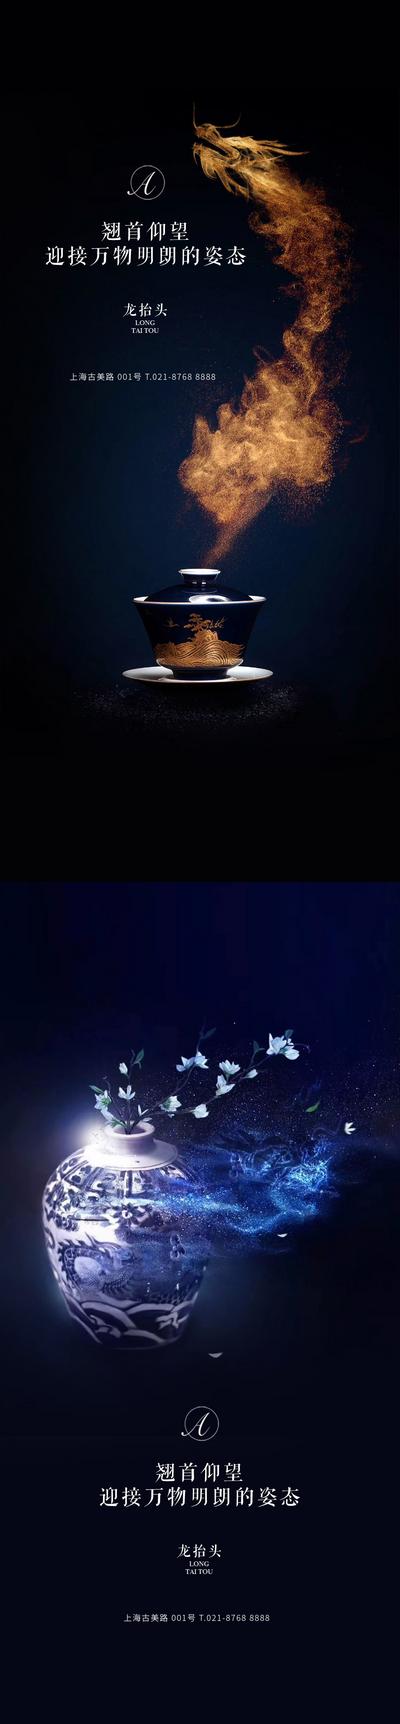 南门网 海报 房地产 中国传统节日 龙抬头 瓷器 茶杯 龙 烟雾 